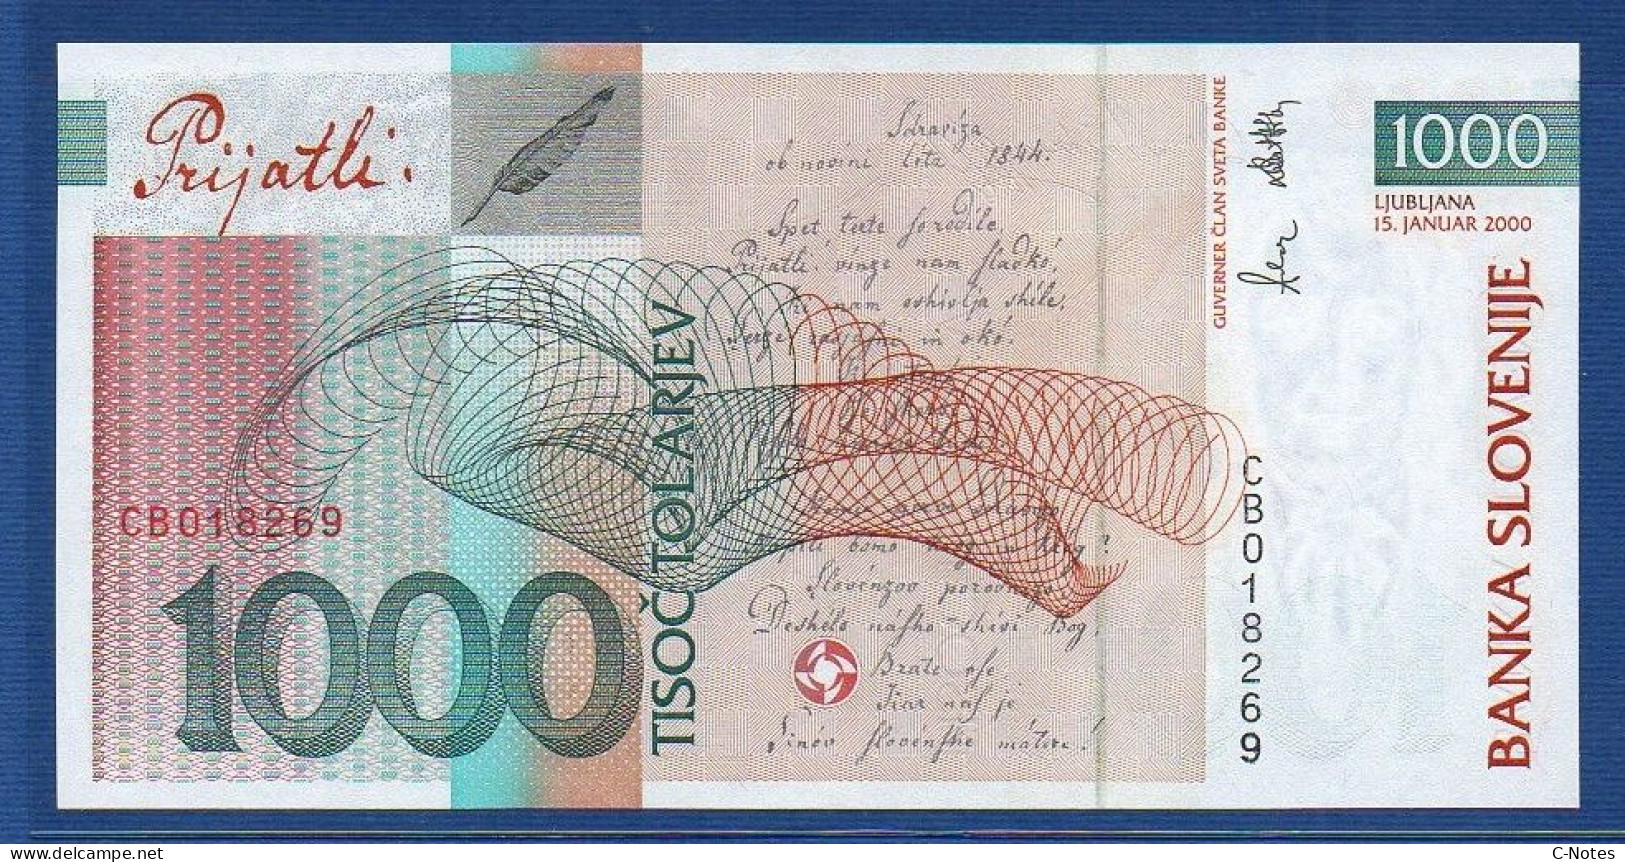 SLOVENIA - P.22 – 1000 Tolarjev 2000 UNC, S/n CB018269 - Slovenia